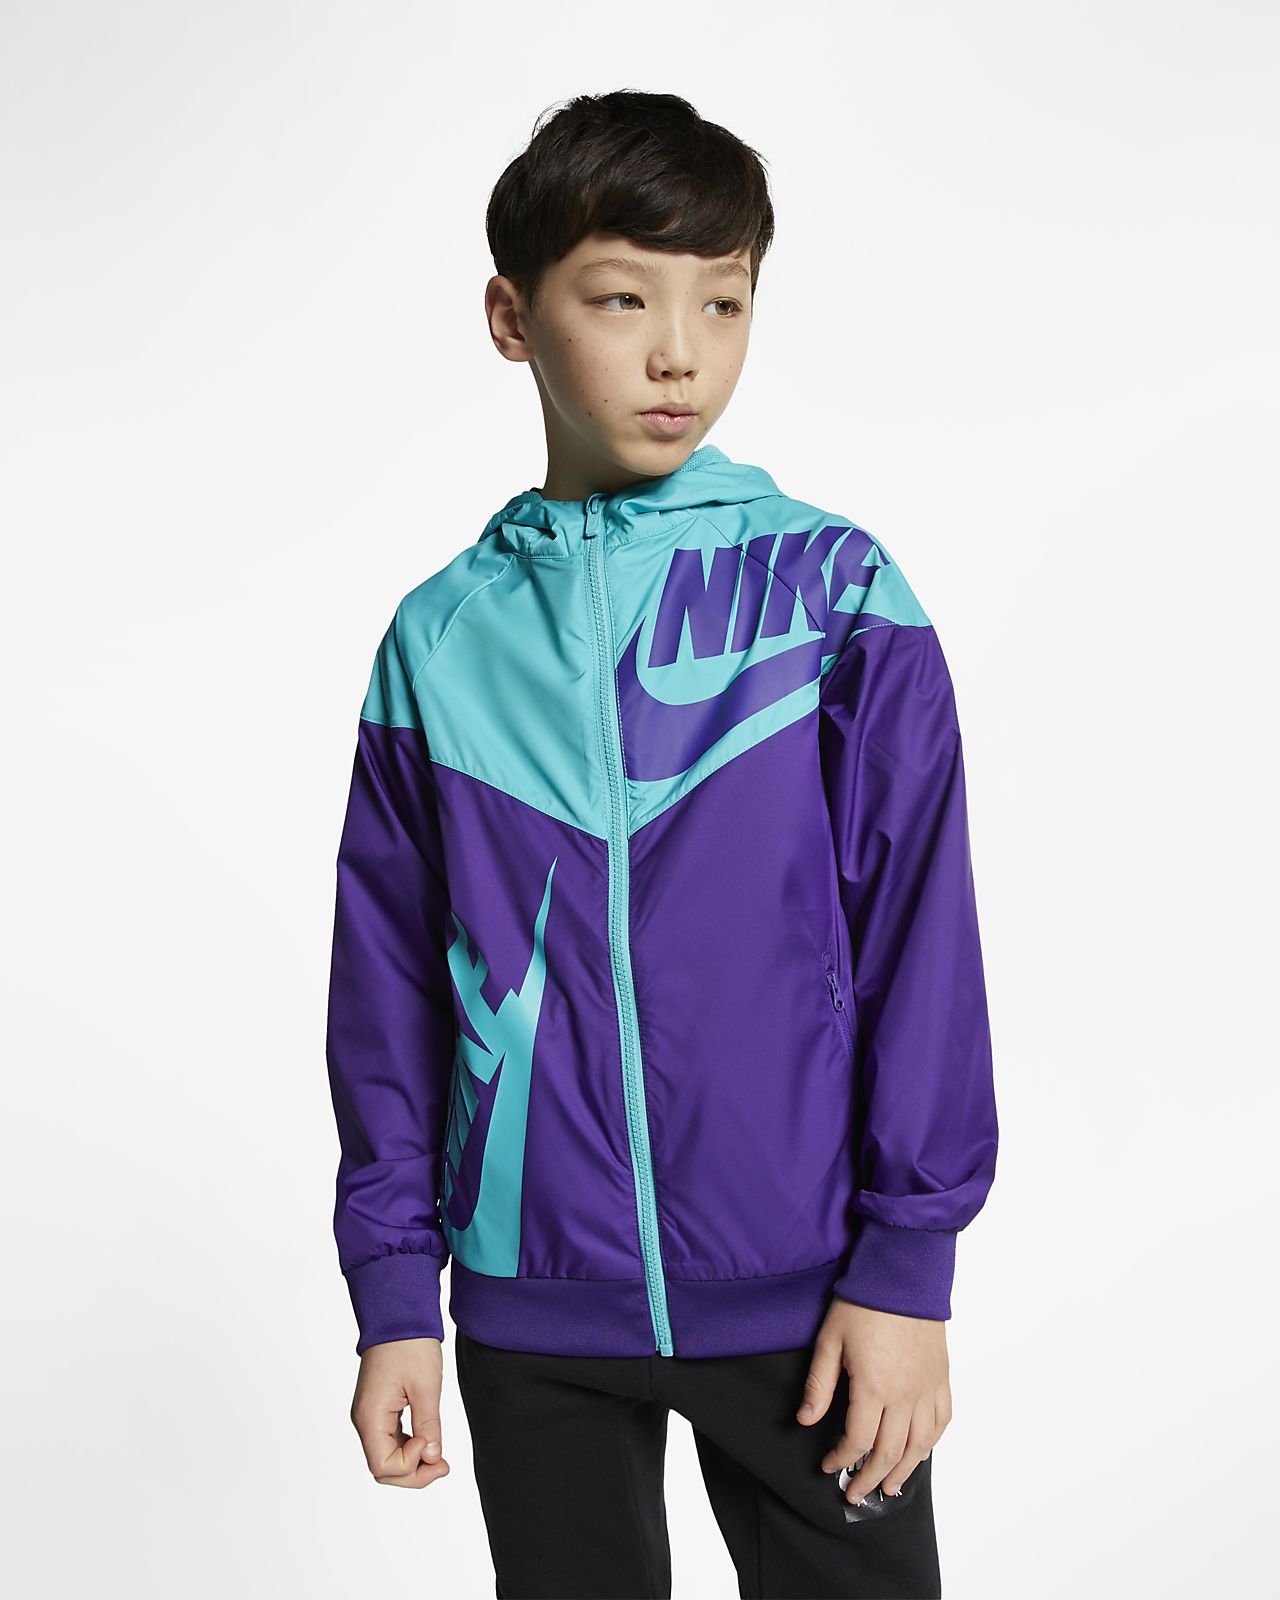 nike youth windbreaker jacket